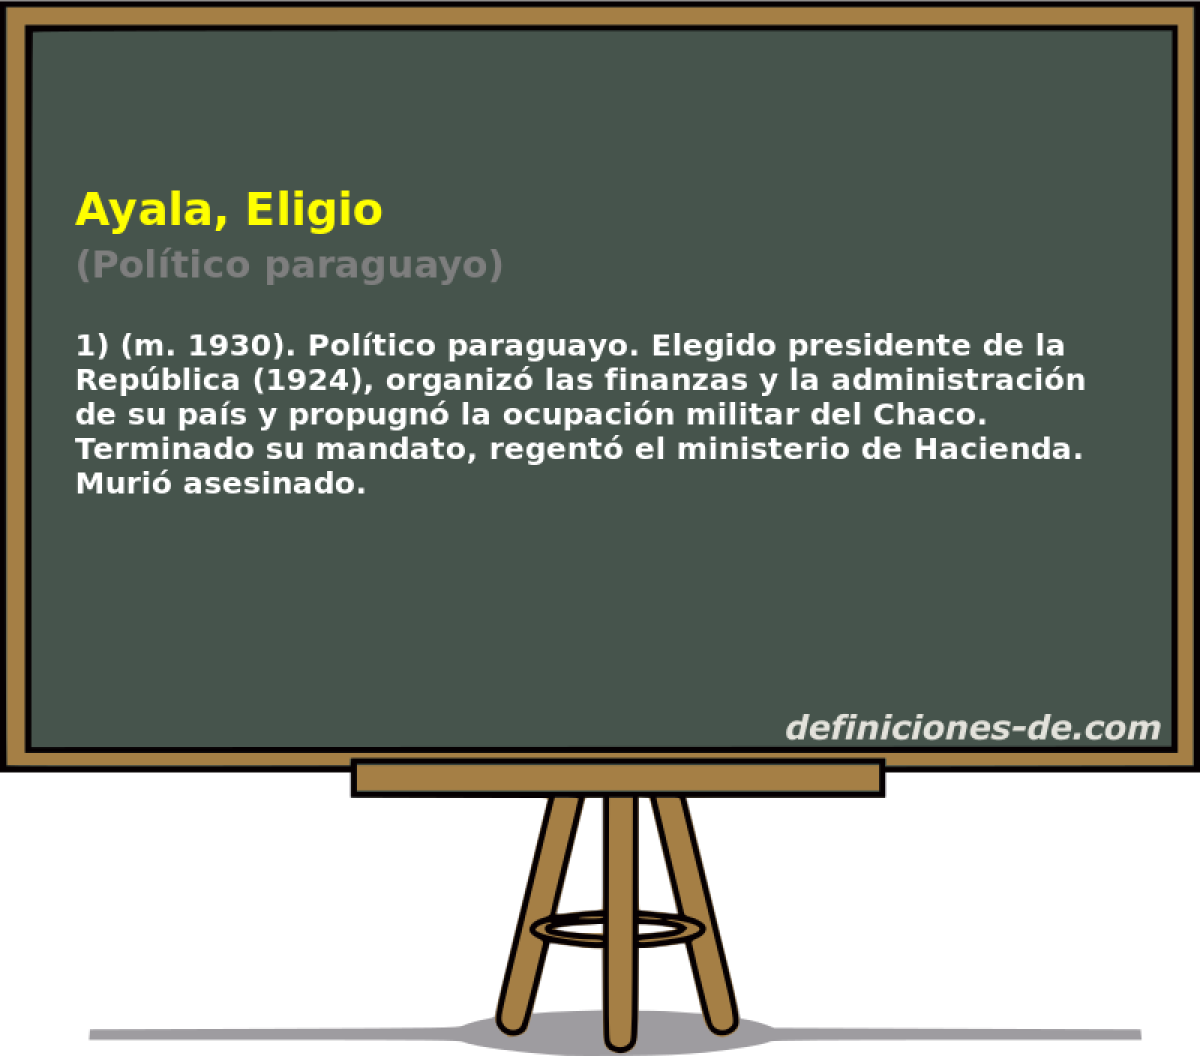 Ayala, Eligio (Poltico paraguayo)